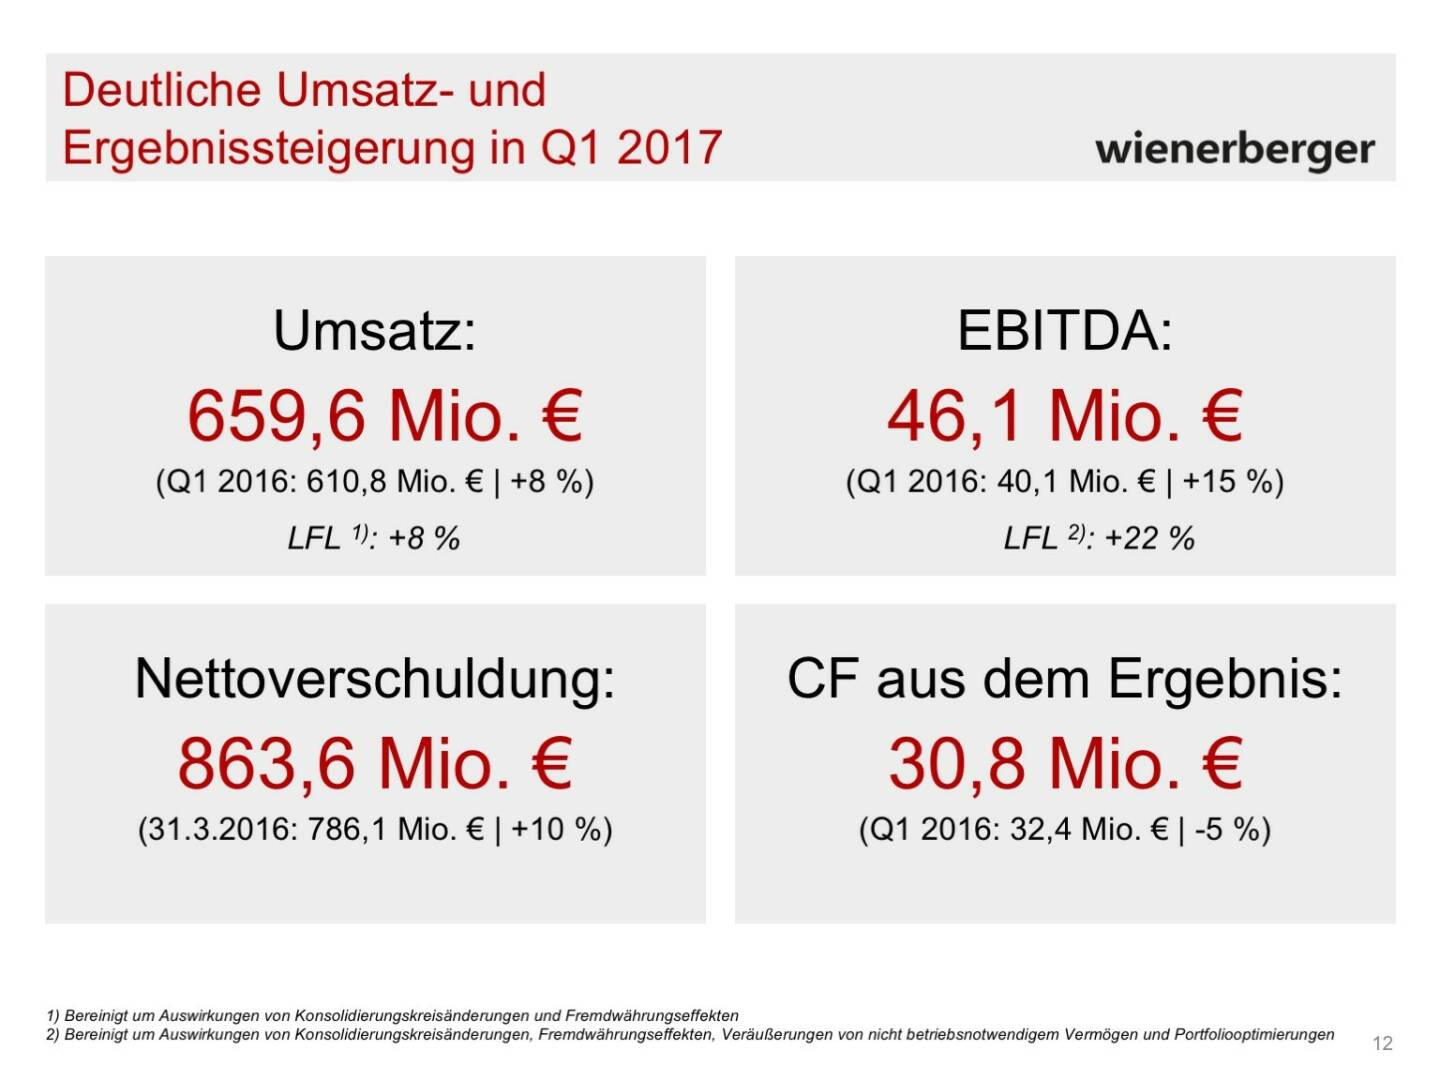 Wienerberger - Umsatz- und Ergebnissteigerung Q1 2017